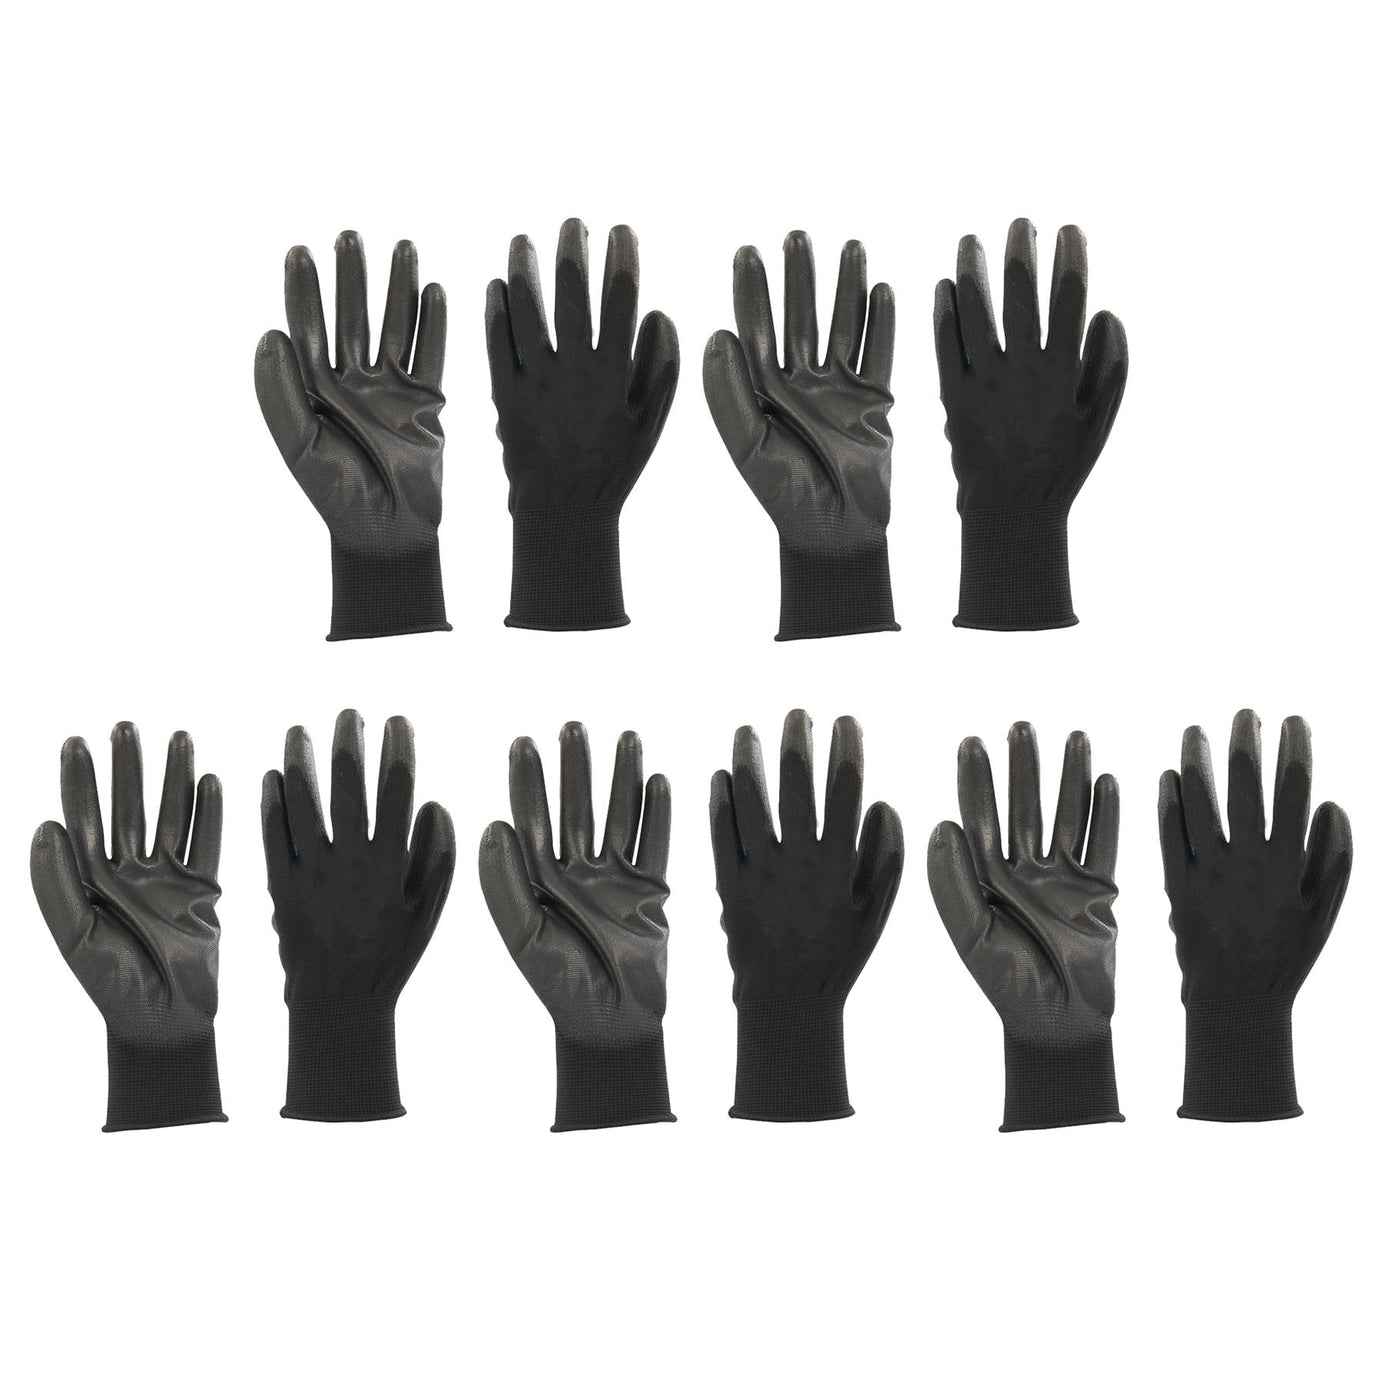 20x PU Palm Coated Work Wear Gardening Black Safety Gloves M 9